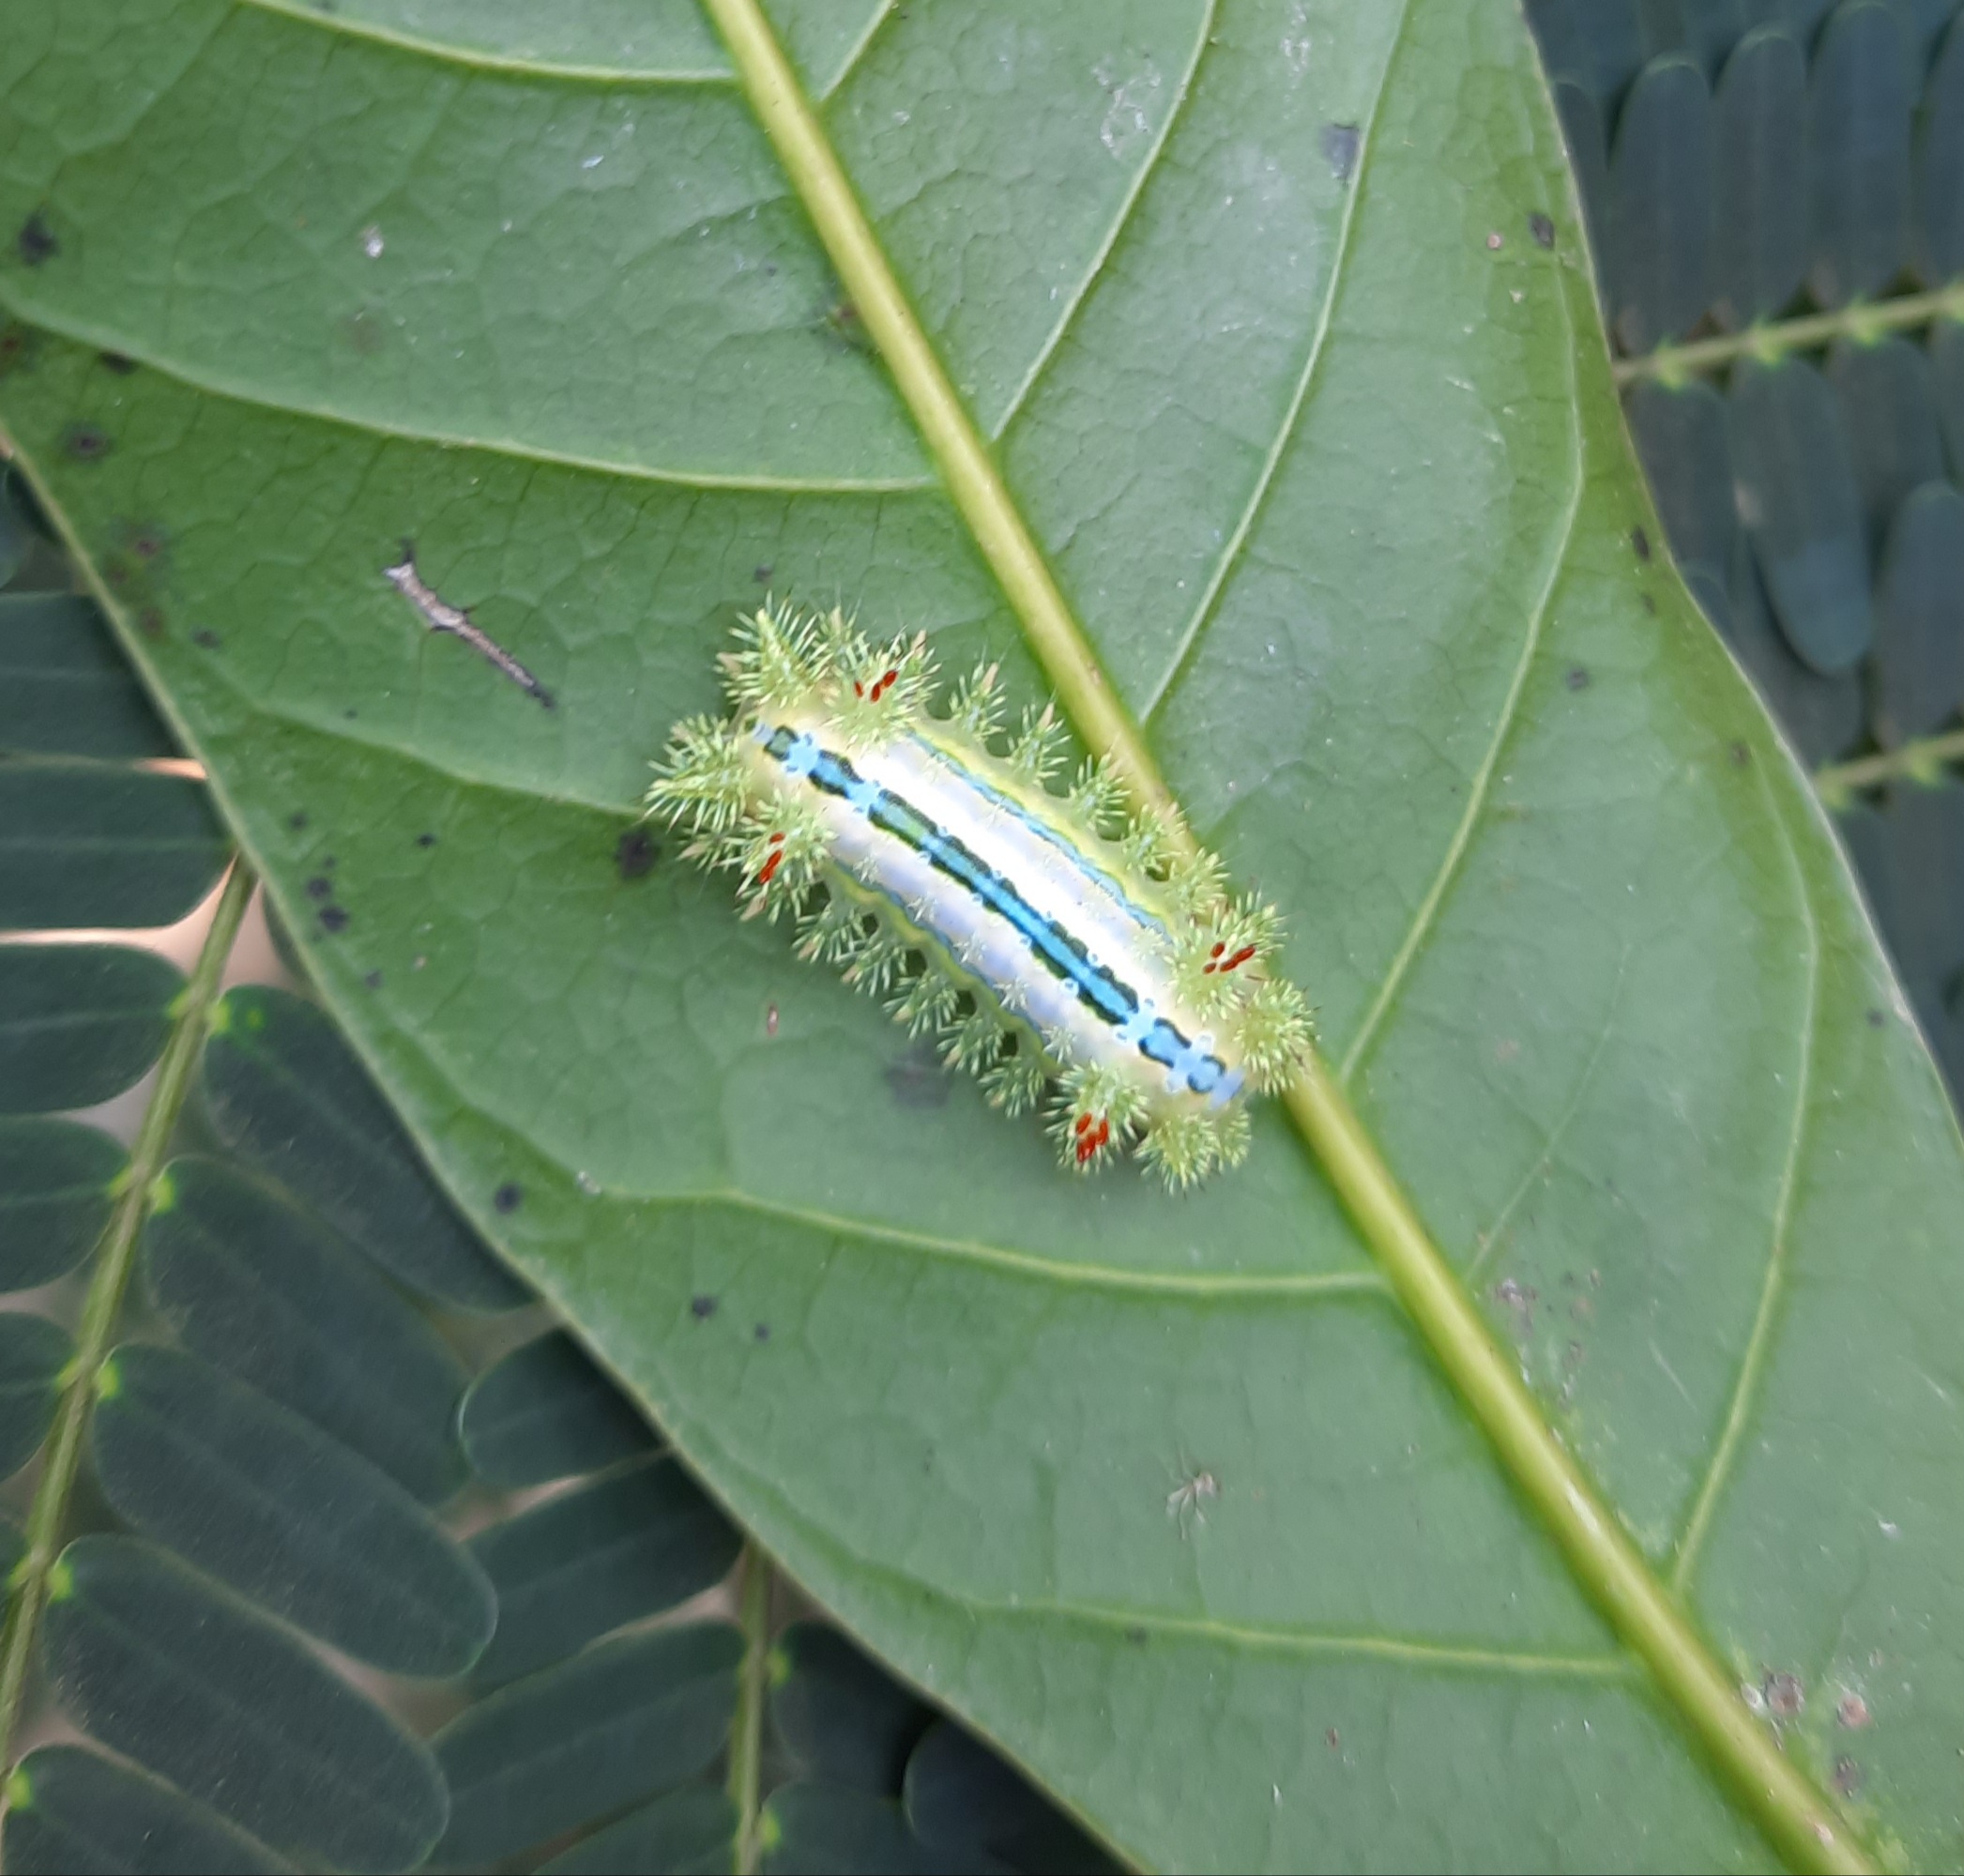 A thorny worm on a leaf